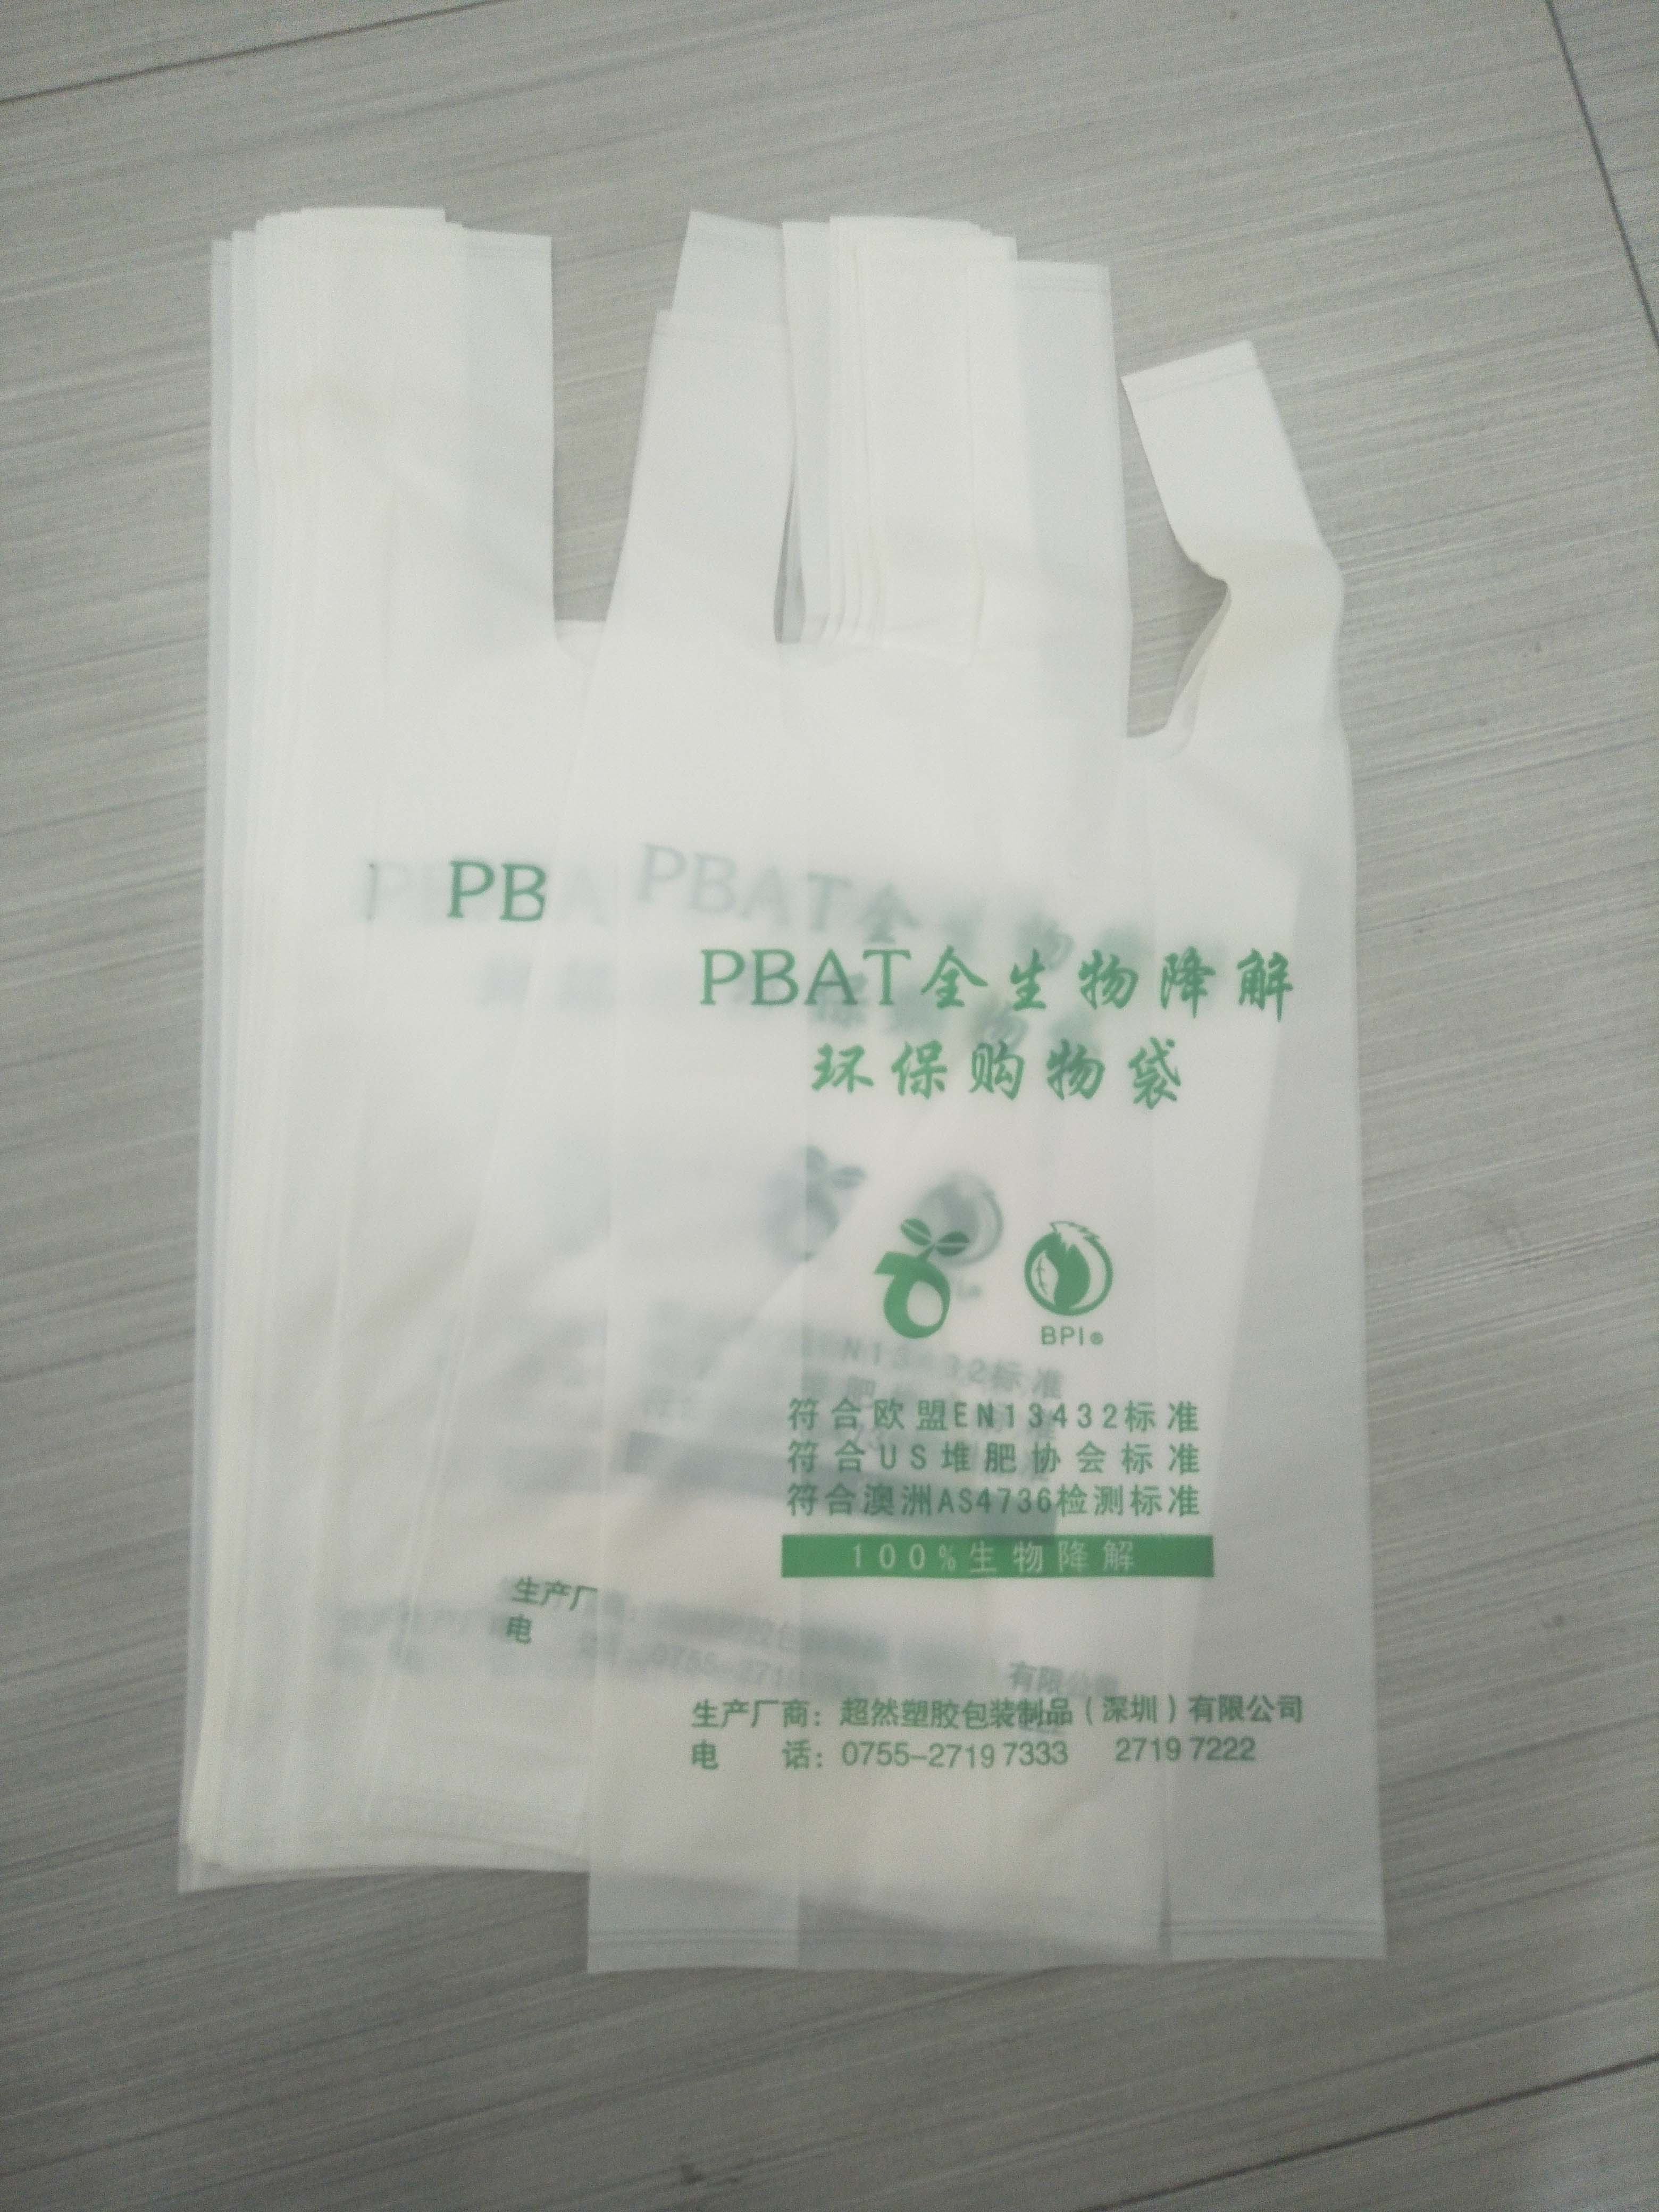 PBAT全生物降解环保包装袋|生物降解塑料袋